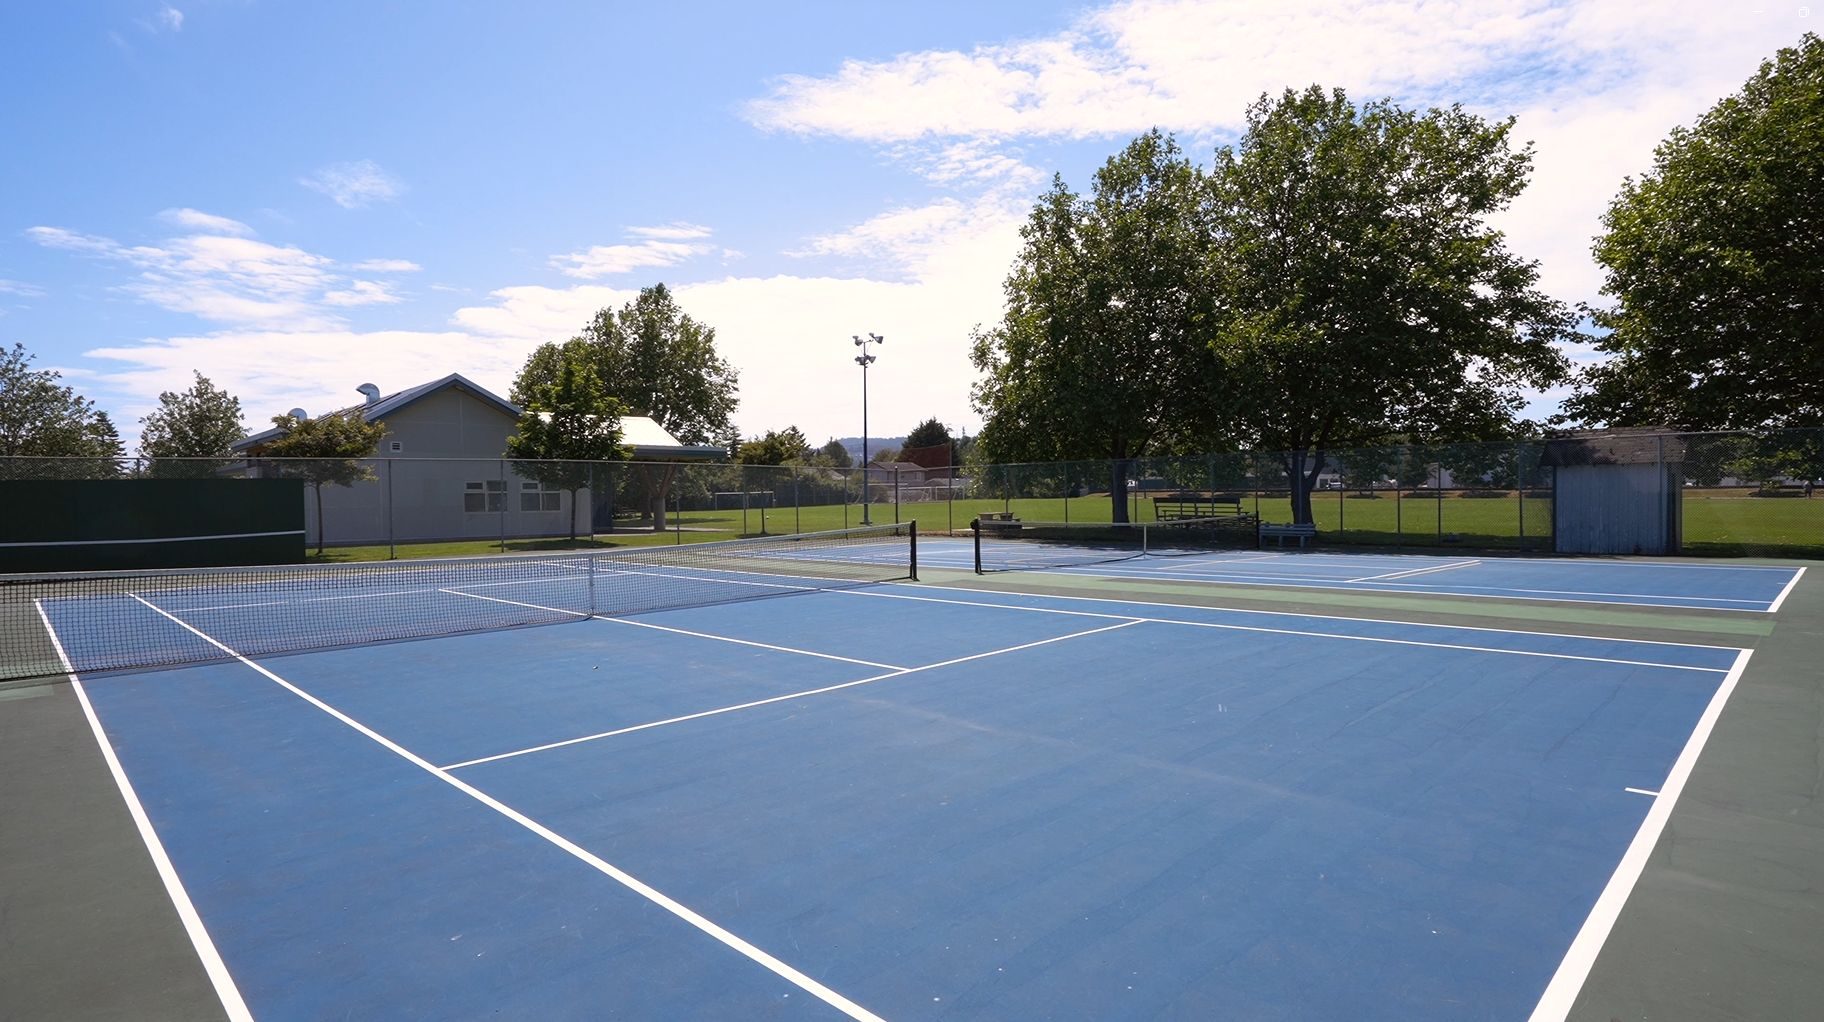  Iroquois Park Tennis Courts 